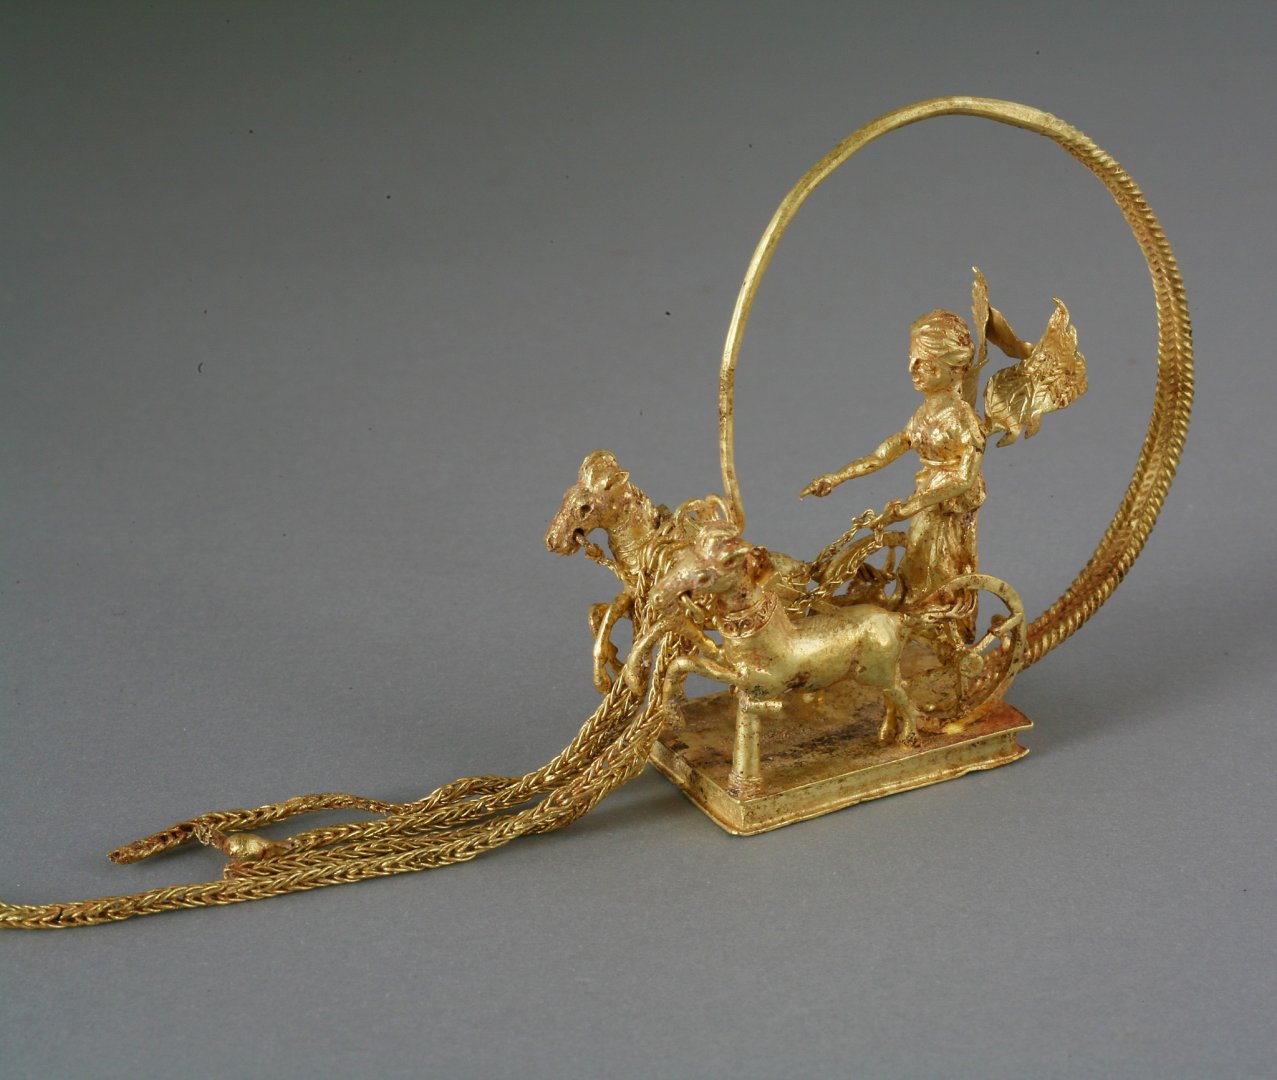 Златните обеци са сред уникалните експонати, открити в могилата. Снимки Община Царево